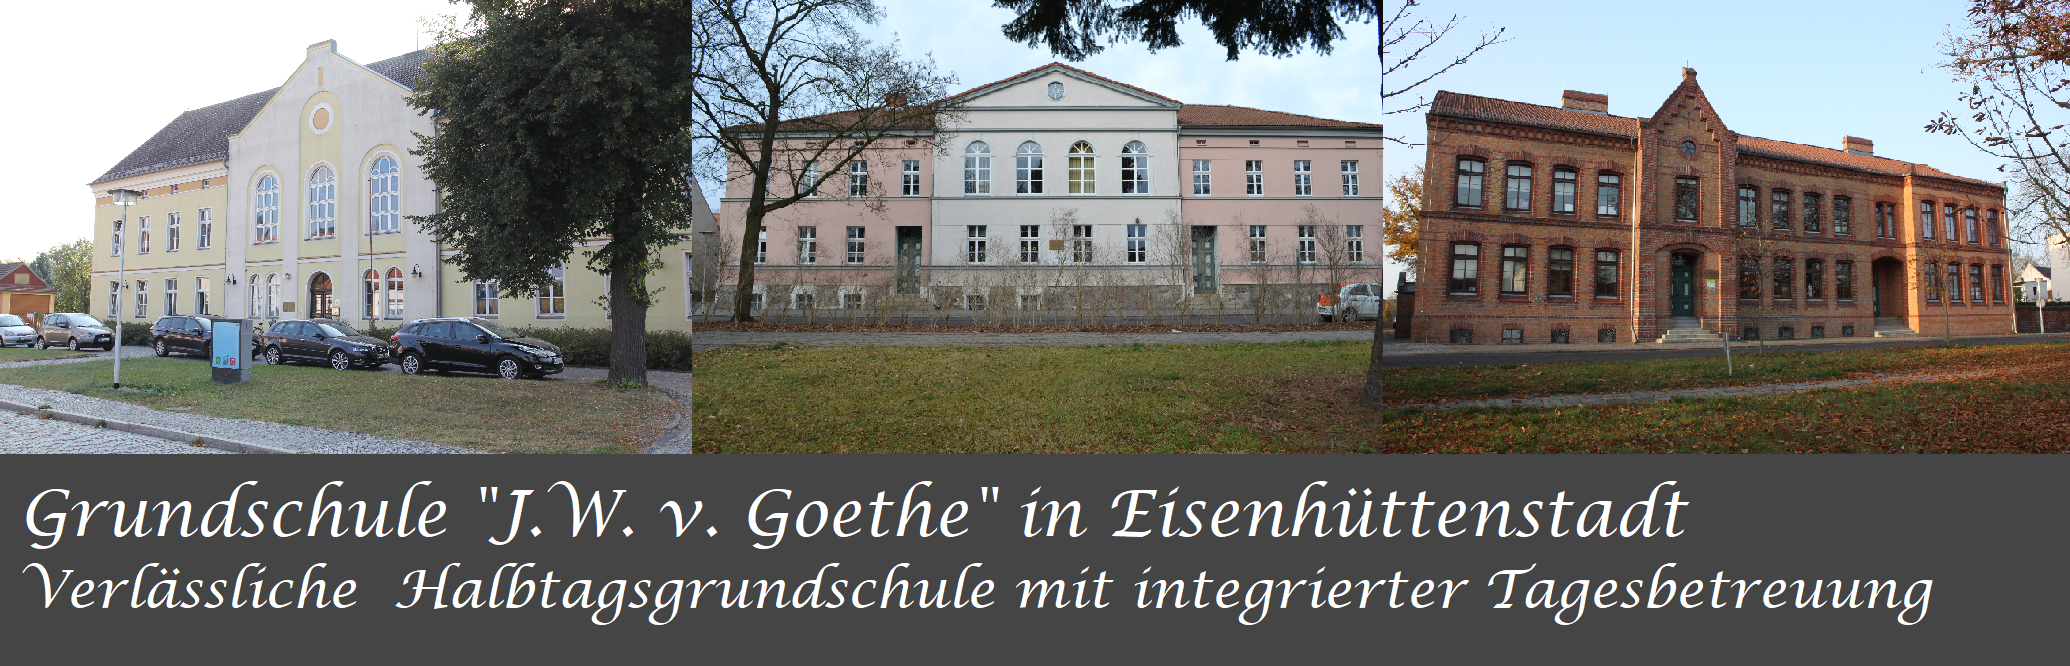 Grundschule Johann Wolfgang von Goethe